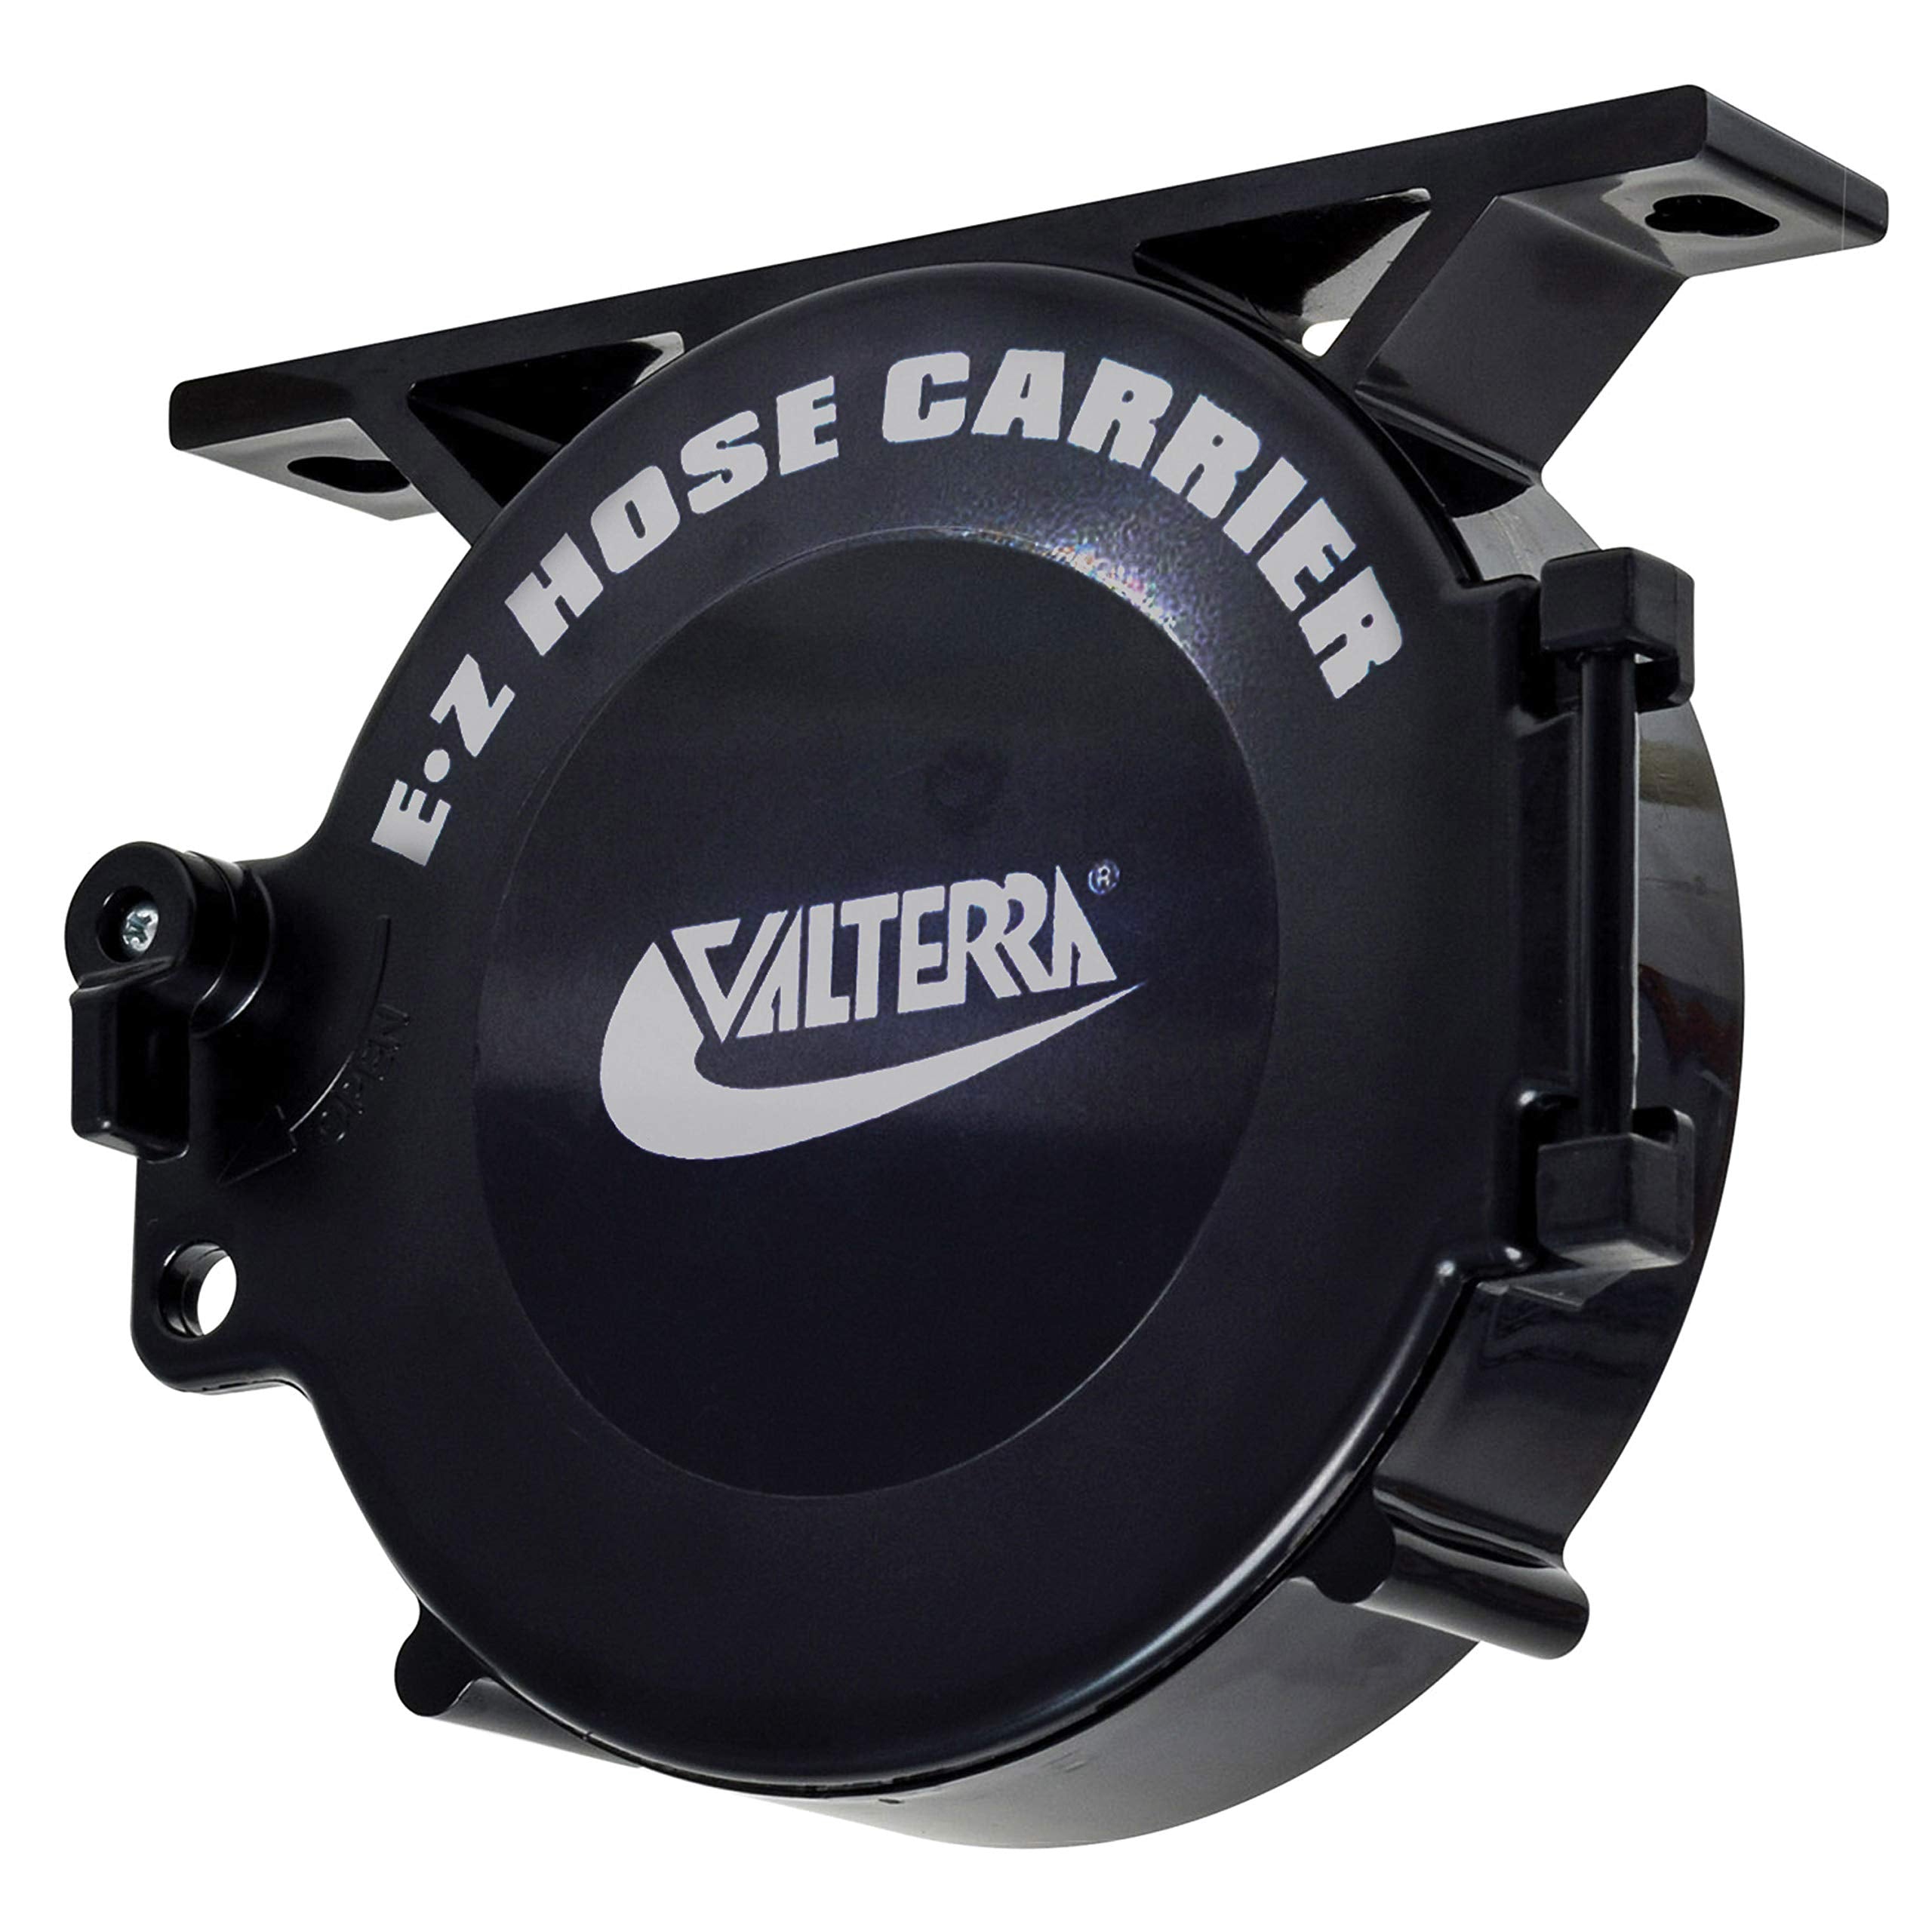 Valterra A04-0448BK Cap and saddle for Adjustable Hose Carrier, Black, Bagged